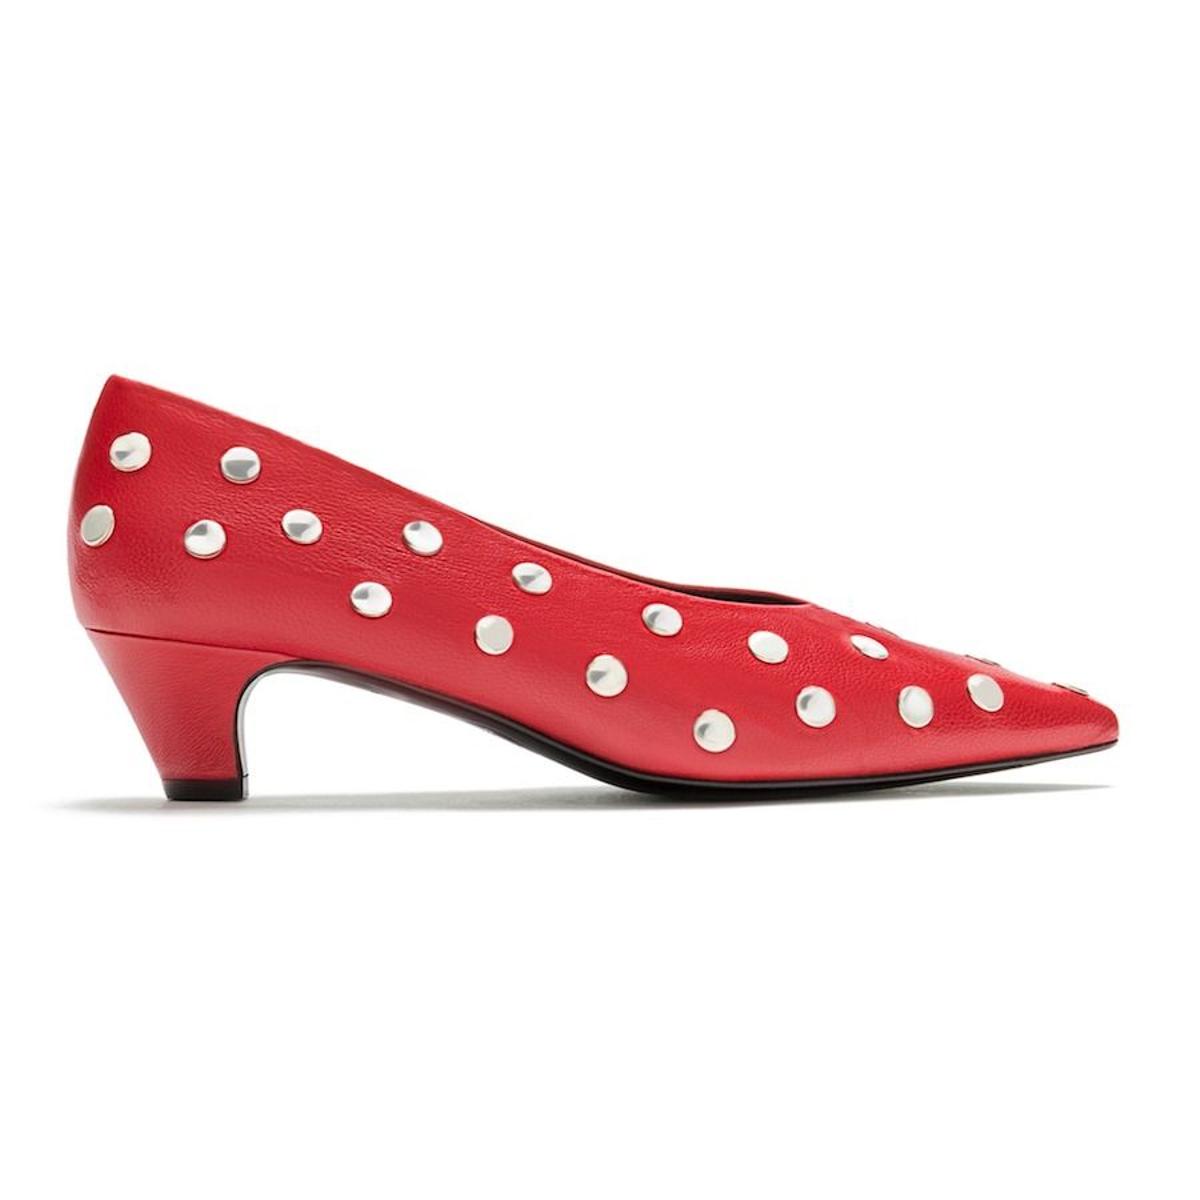 Zapatos rojos: el 'kitten heel' rockero